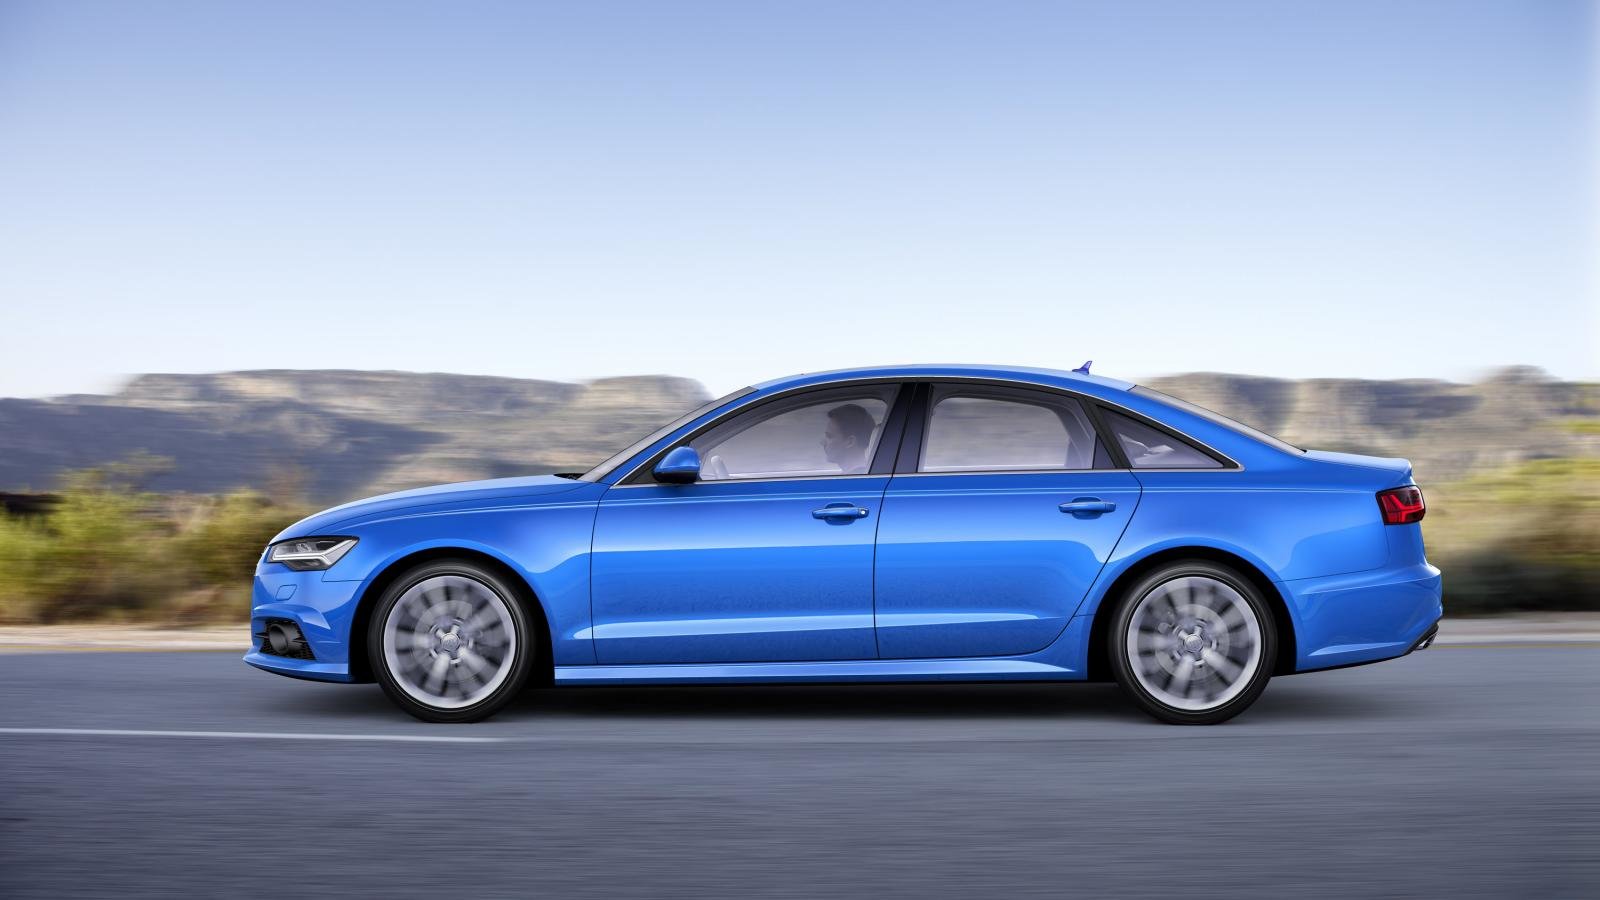 Audi A6 prošlo decentní modernizací, několik změn exteriéru doplňuje lepší interiér.